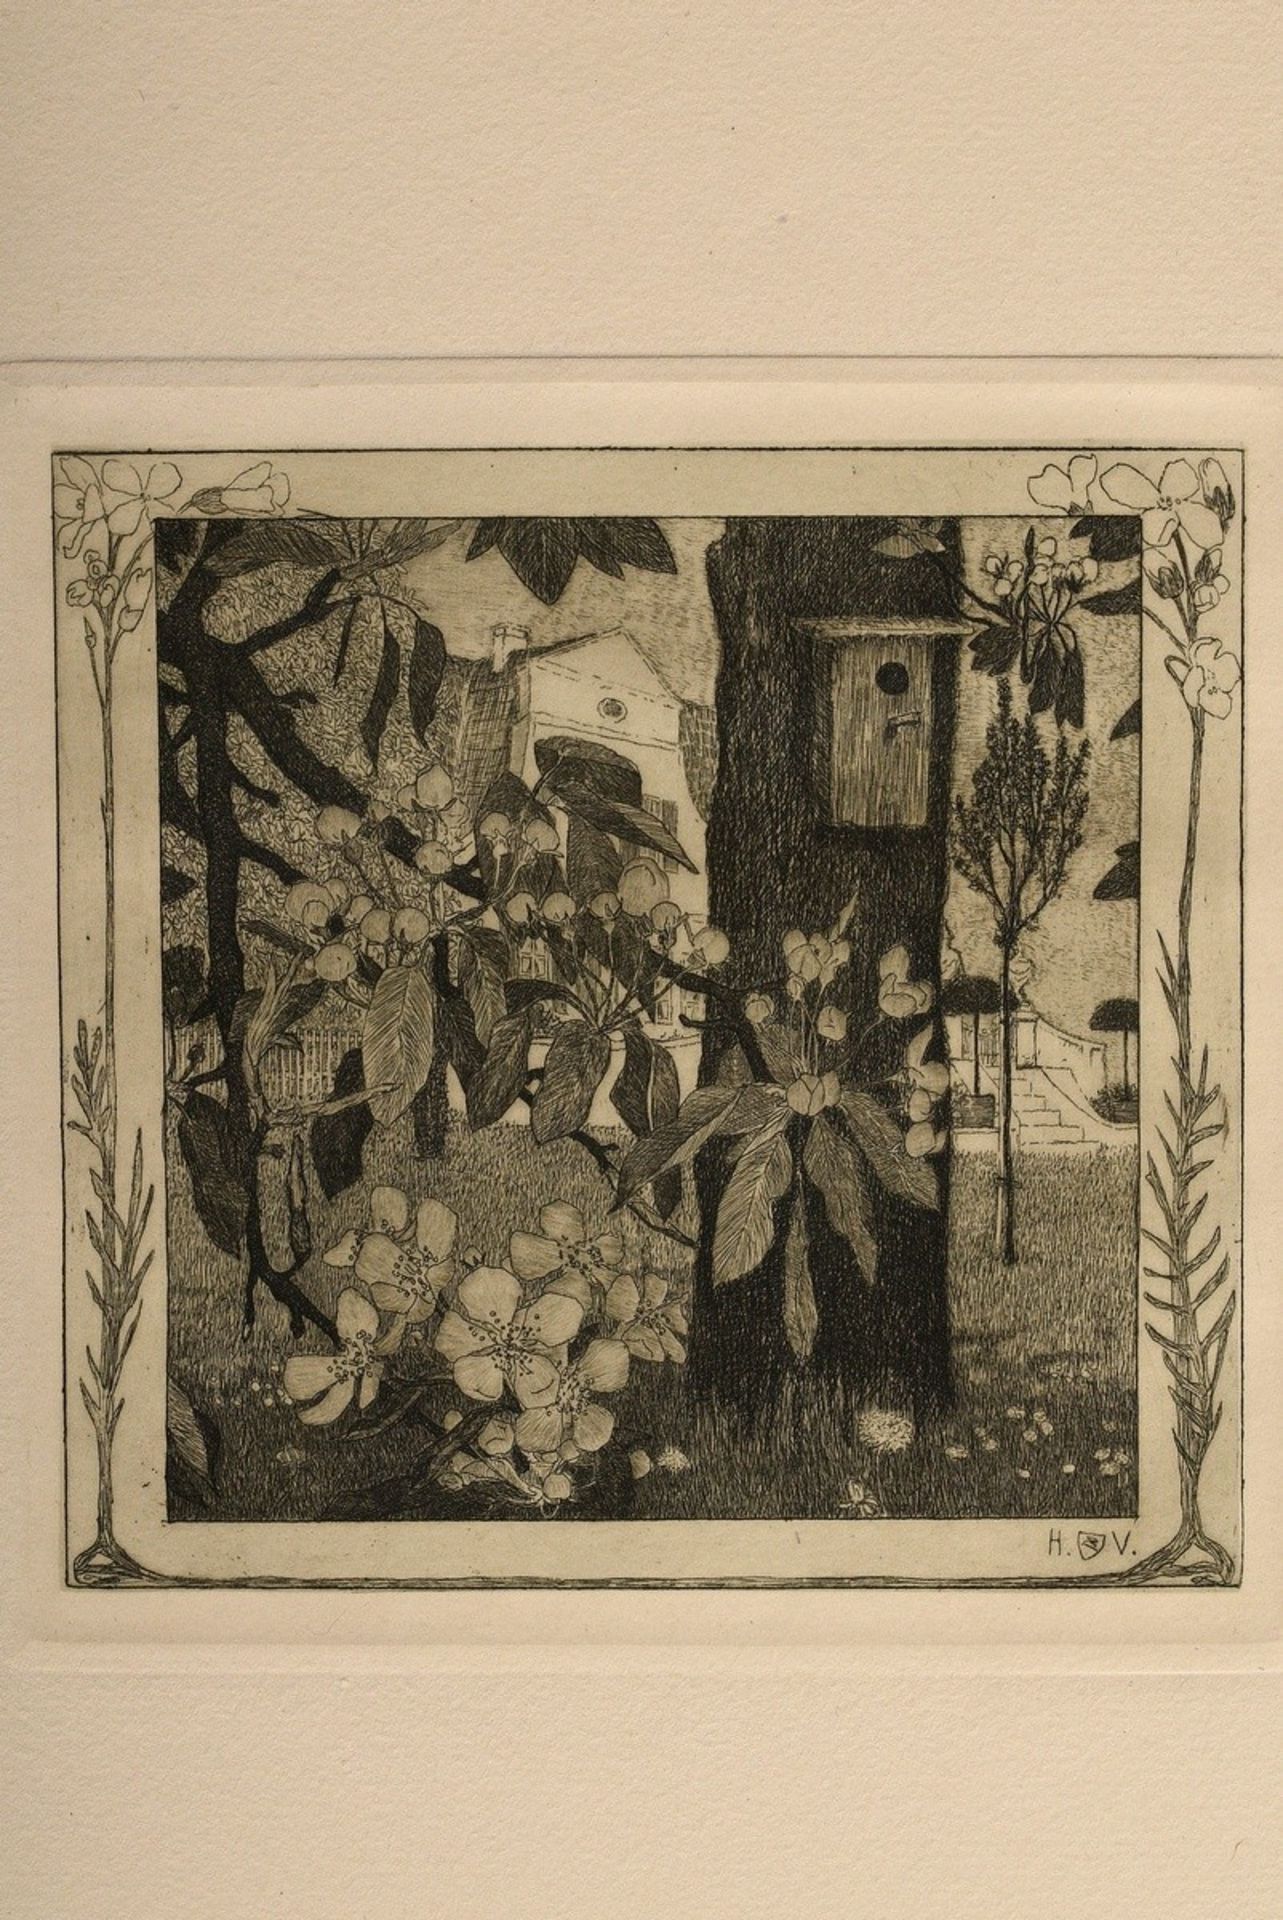 Vogeler, Heinrich (1872-1942) "An den Frühling" 1899/1901, portfolio with 10 etchings and prelimina - Image 23 of 25